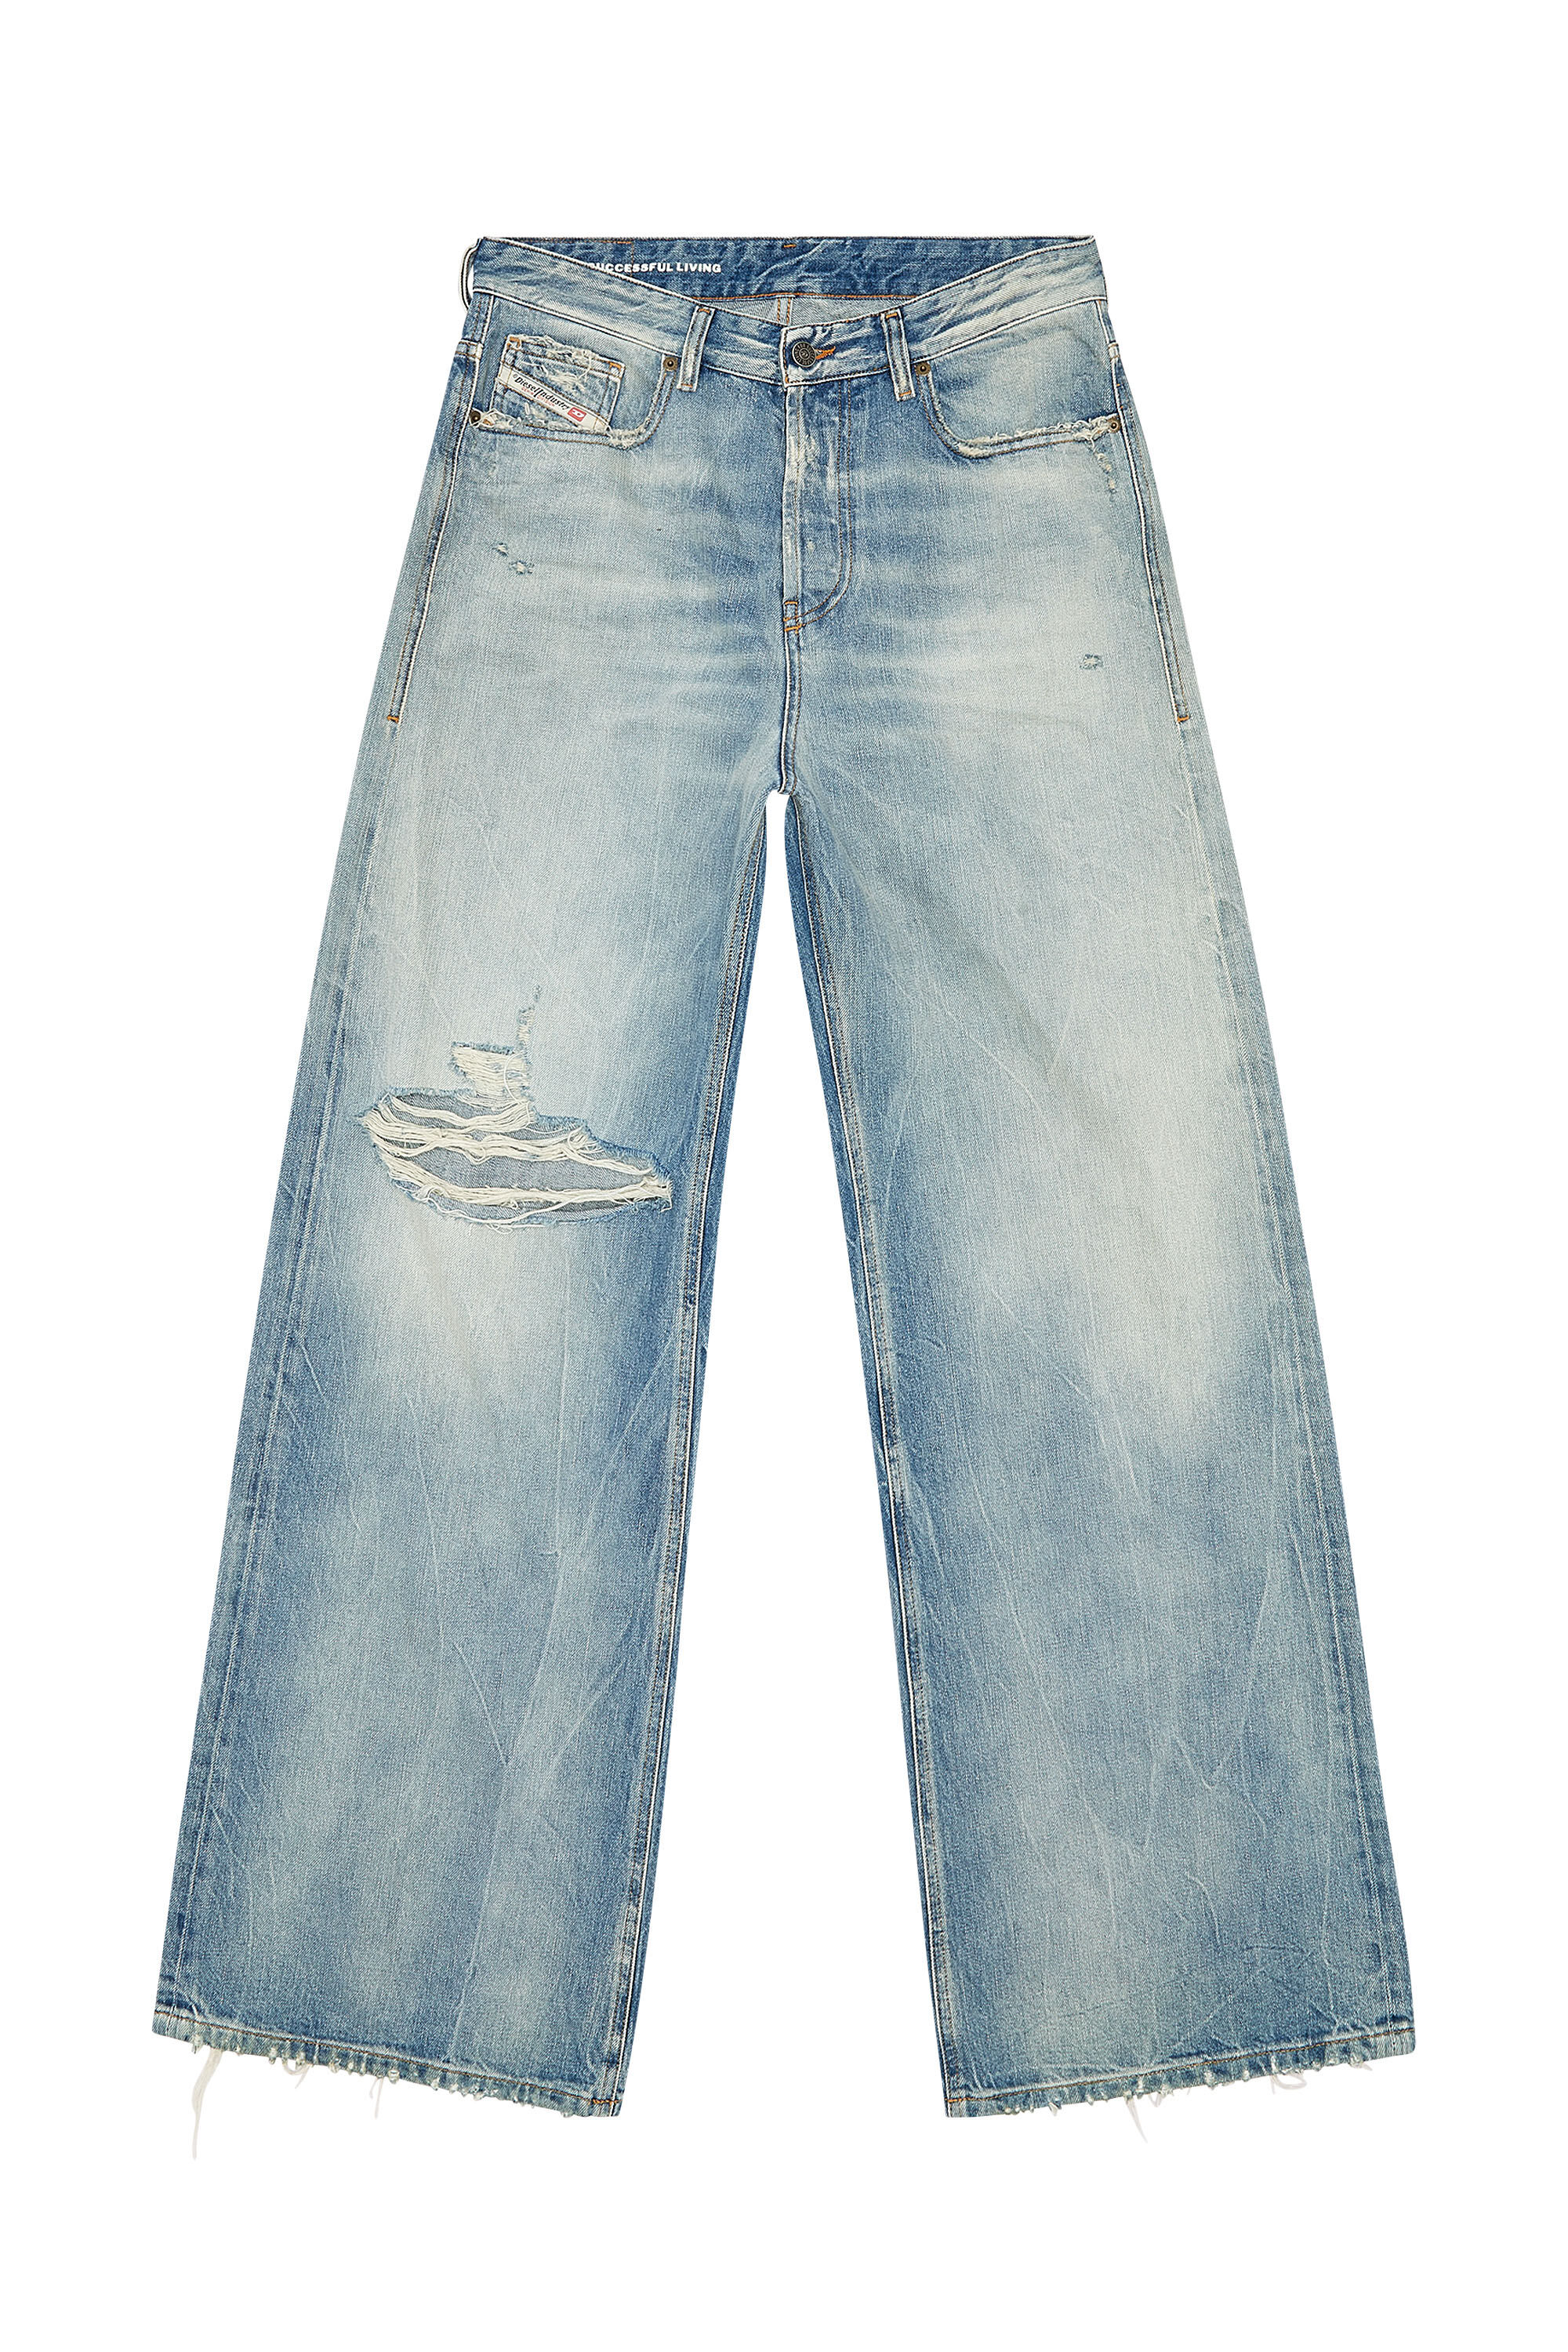 Women's Straight Jeans | Light blue | Diesel 1996 D-Sire